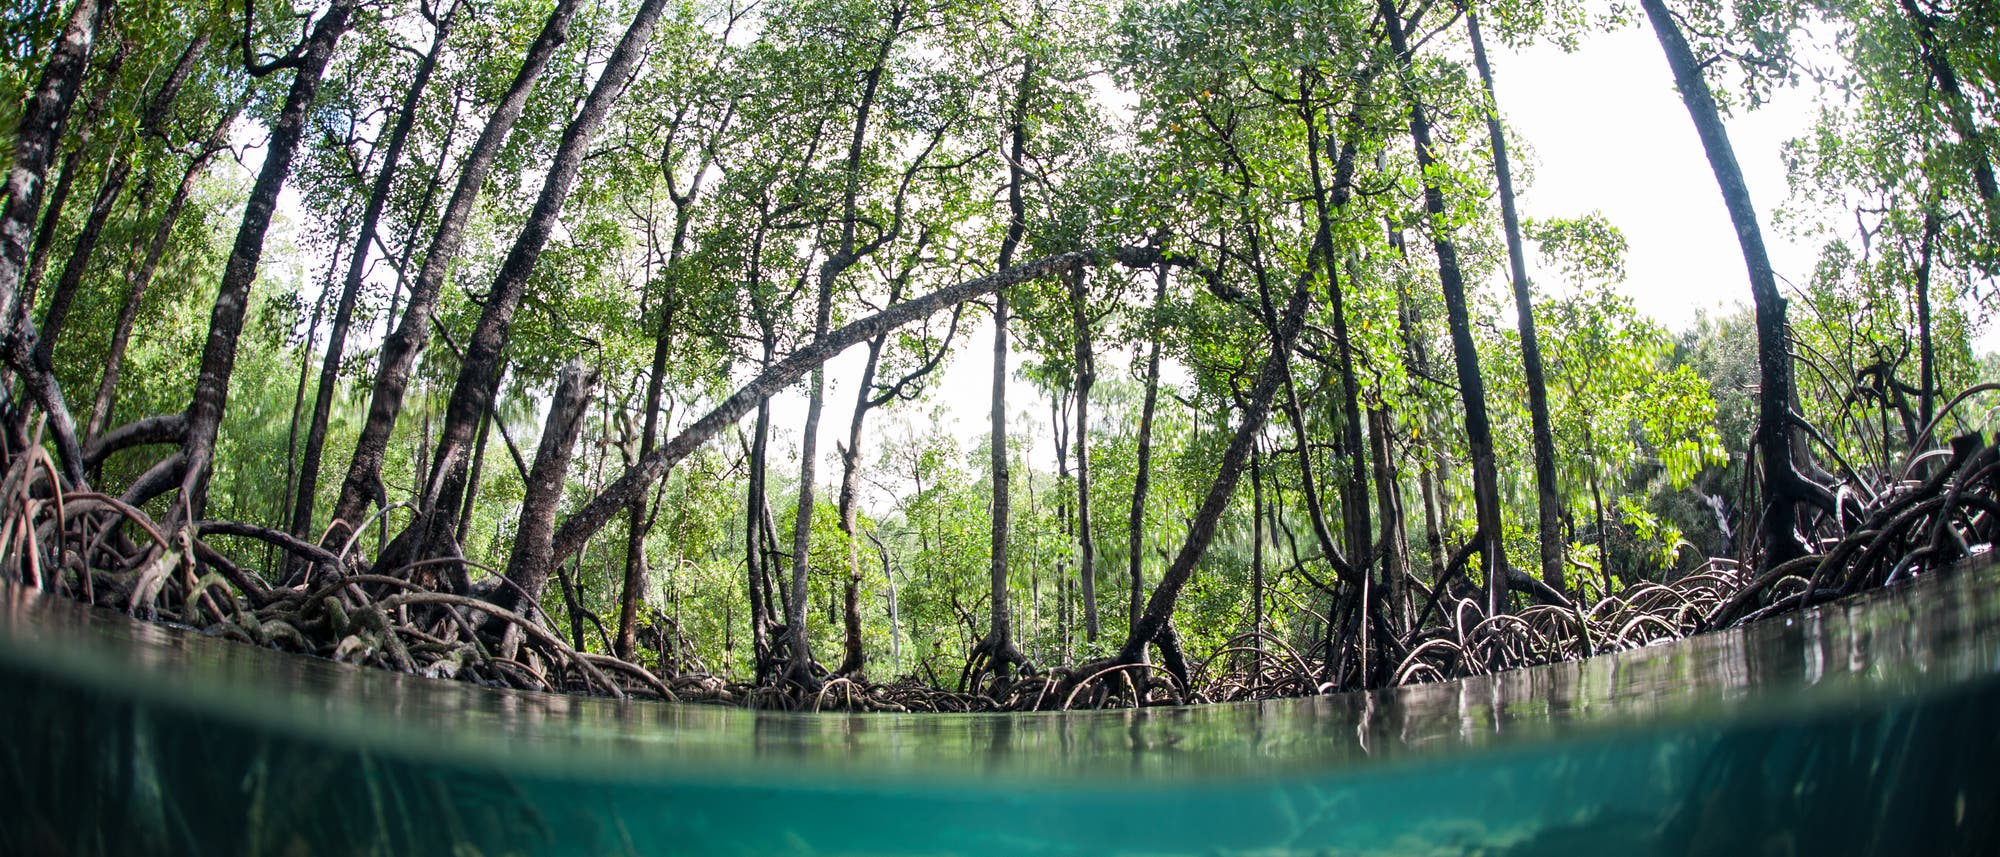 Mangrovenwald in Indien